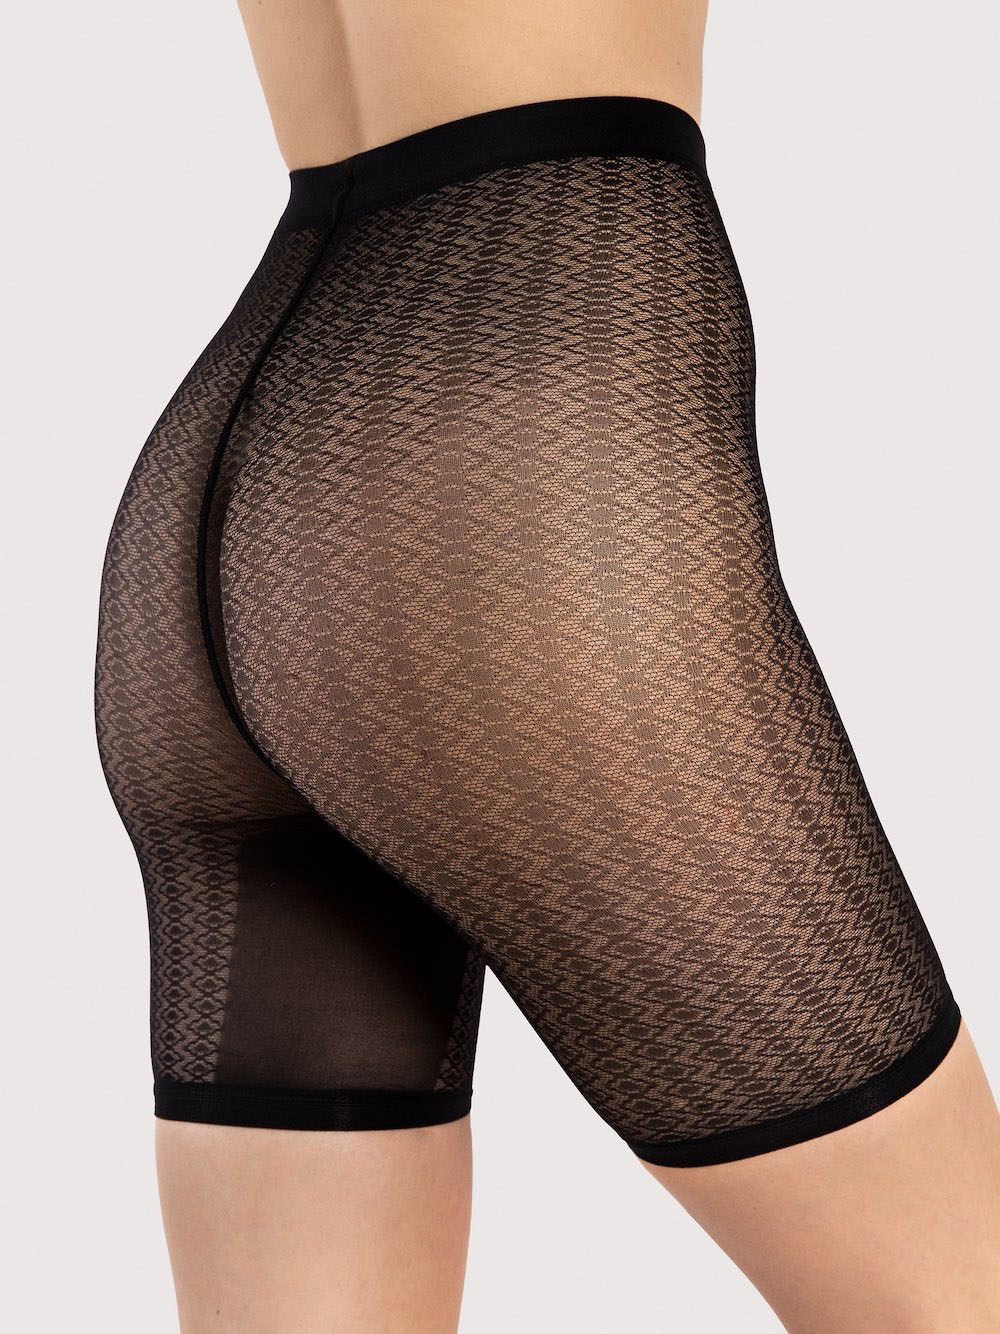 Высокие эластичные женские трусики шорты для защиты от натирания бёдер Fiore M0011 #1